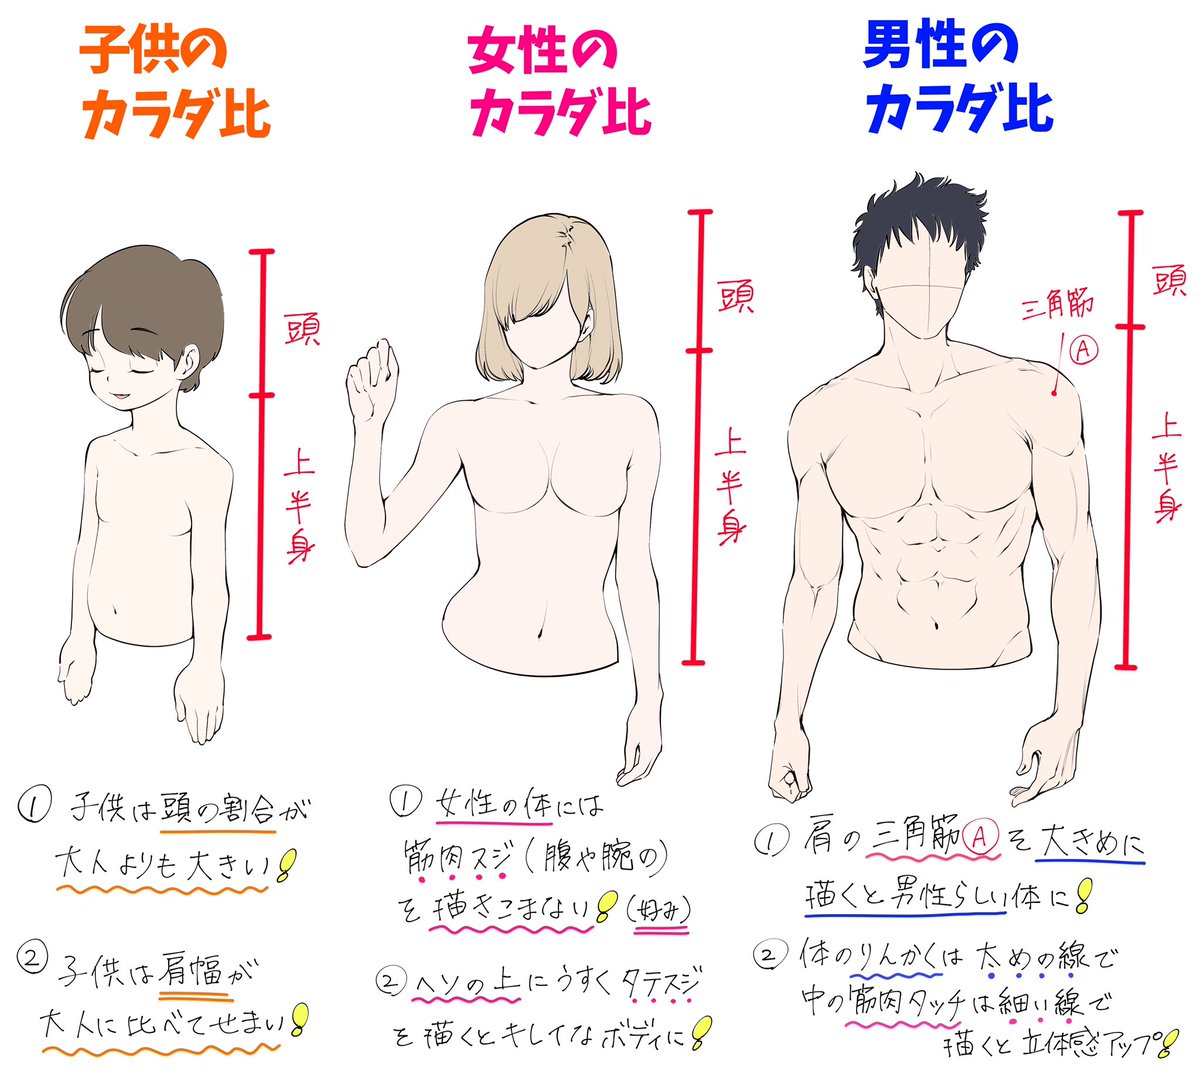 吉村拓也 イラスト講座 男性 女性 子供の身体の描き方 年齢によって変化するデッサンの比率 T Co Sfoysbylmi Twitter